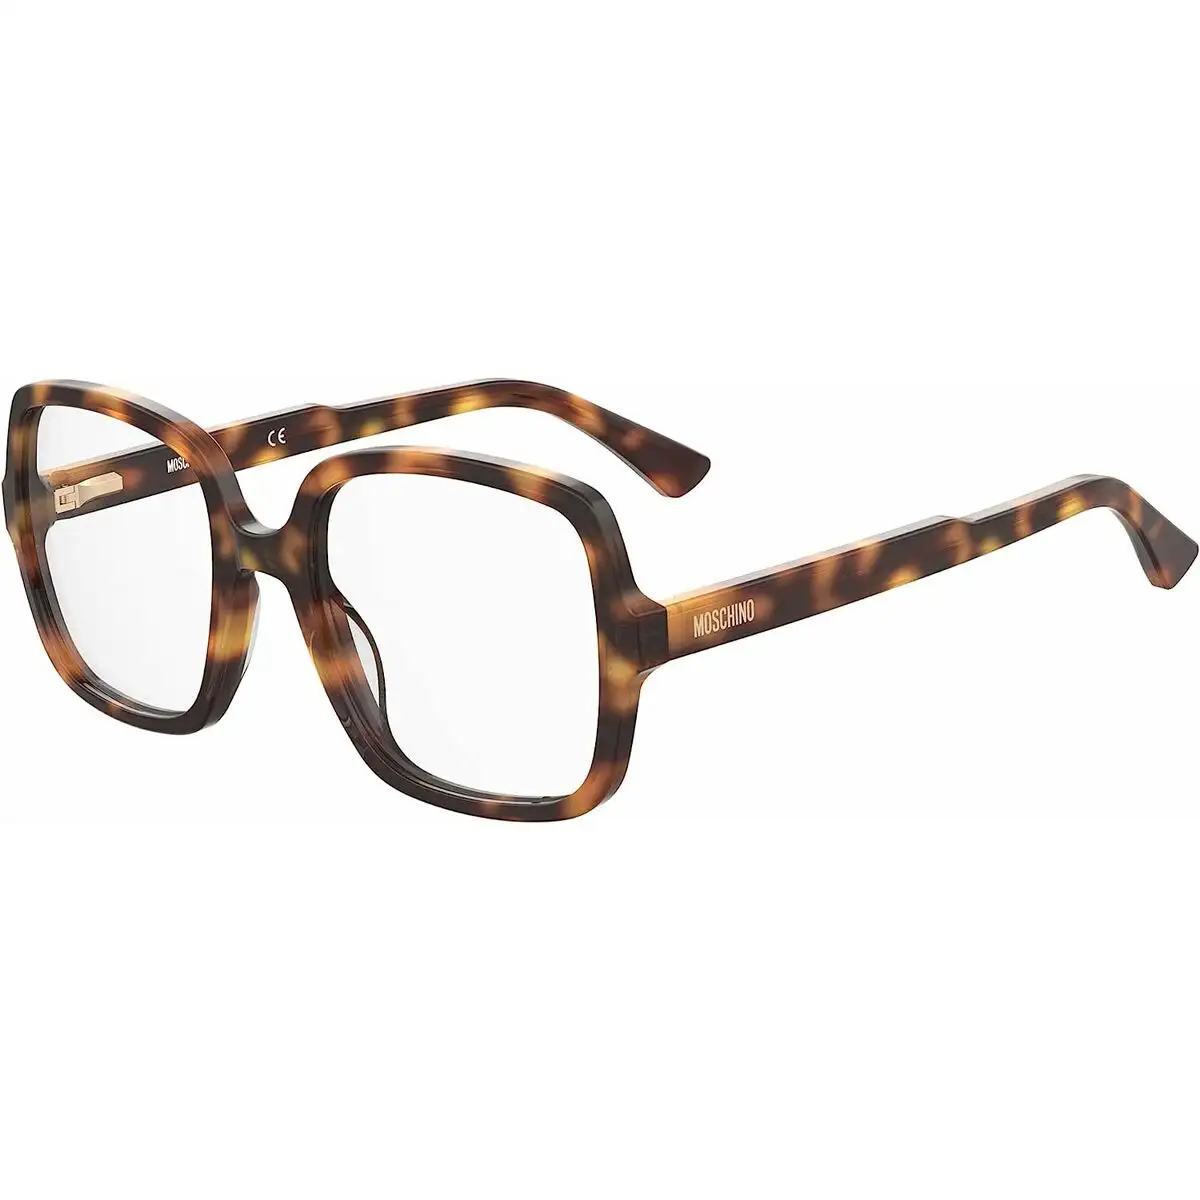 Monture de lunettes femme moschino mos604_8278. DIAYTAR SENEGAL - Là où Choisir est une Affirmation de Style. Naviguez à travers notre boutique en ligne et choisissez des produits qui vous distinguent et vous valorisent.